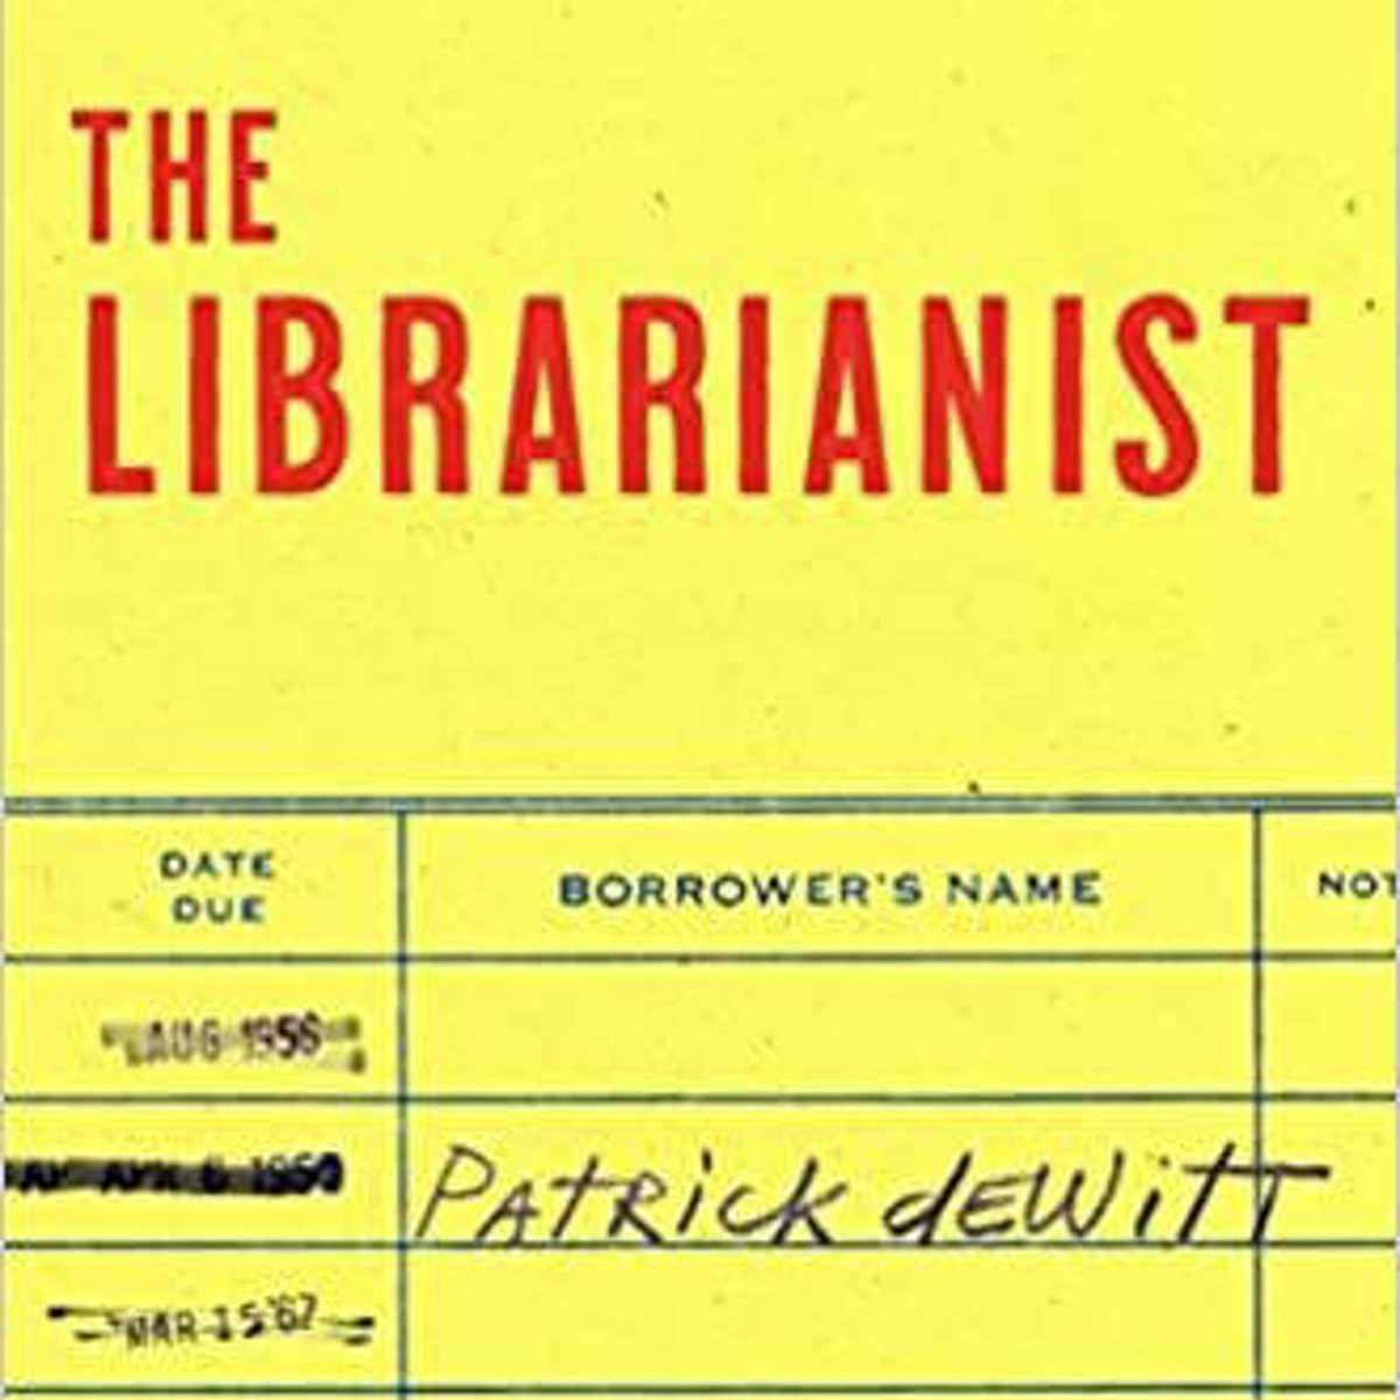 Little Atoms 840 - Patrick deWitt's The Librarianist